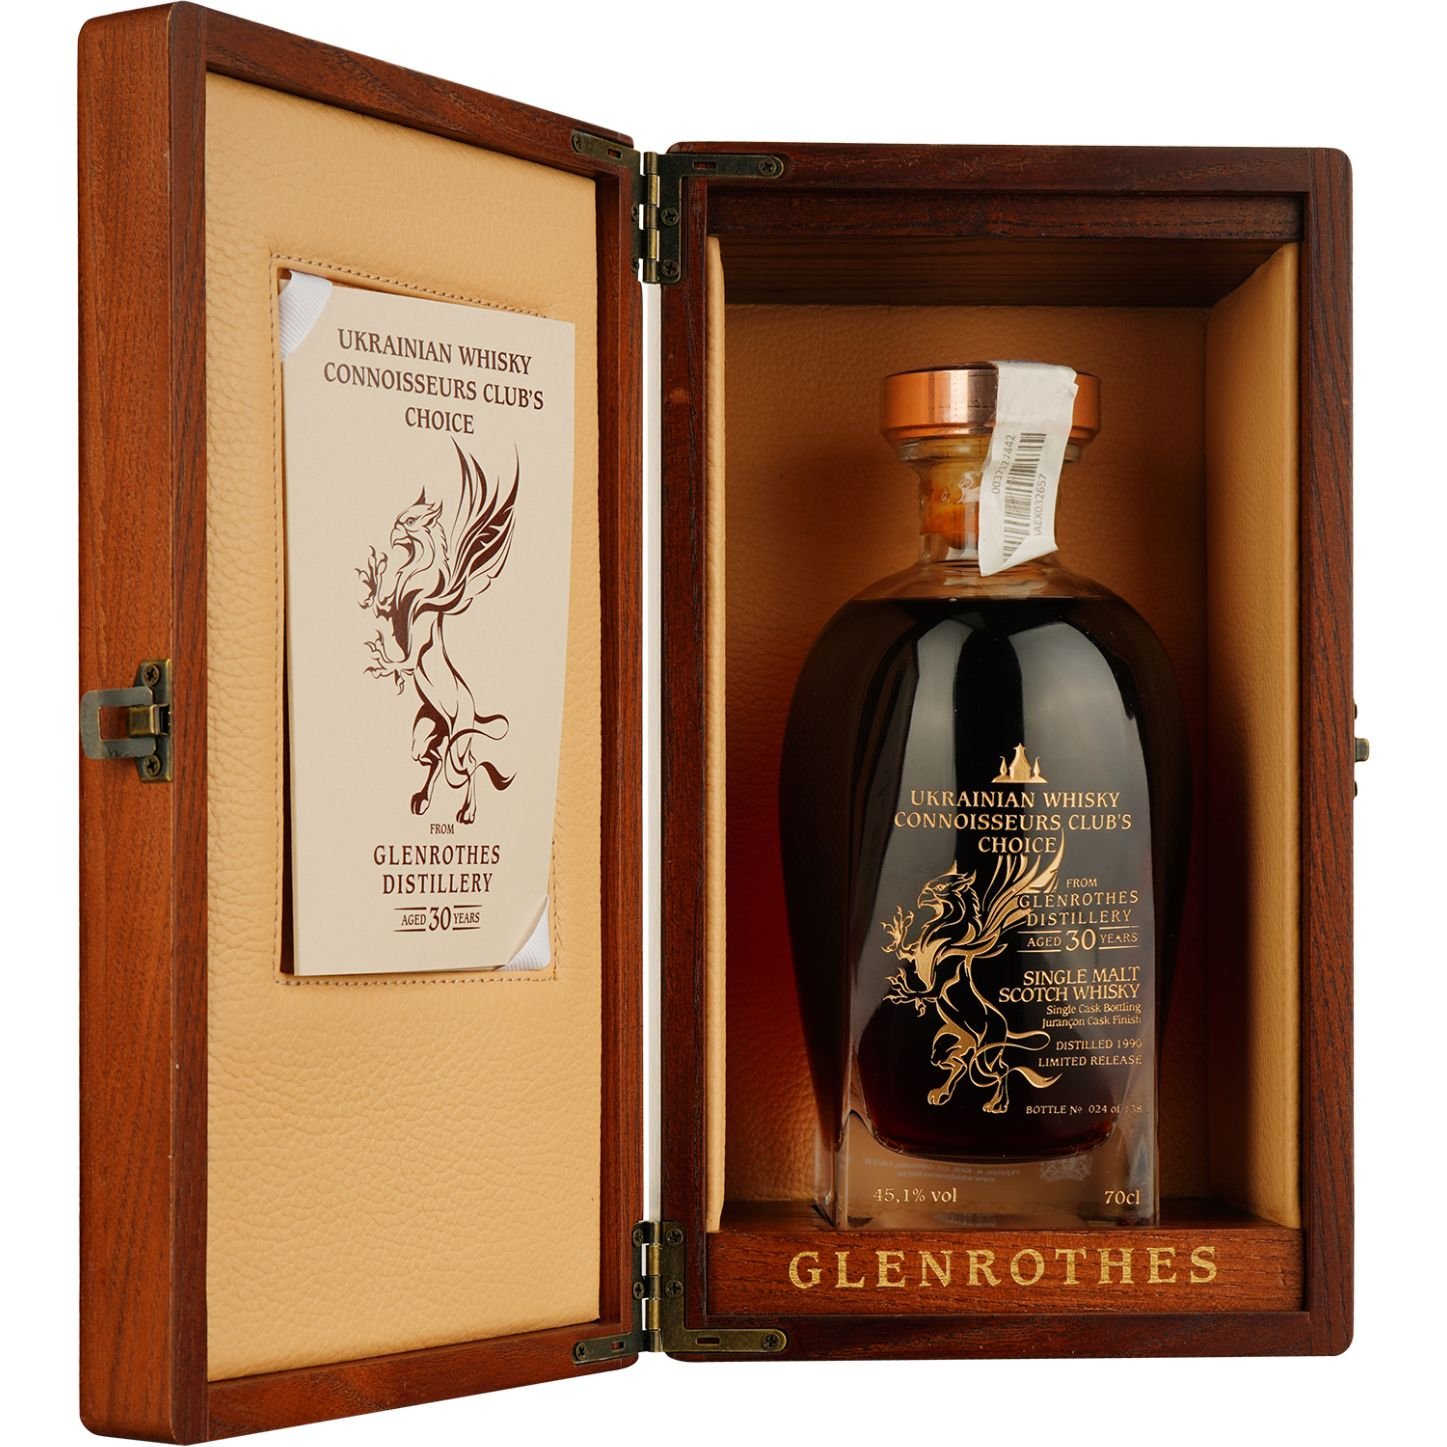 Віскі Glenrothes 30 Years Old Jurancon Single Malt Scotch Whisky, у подарунковій упаковці, 45,1%, 0,7 л - фото 2